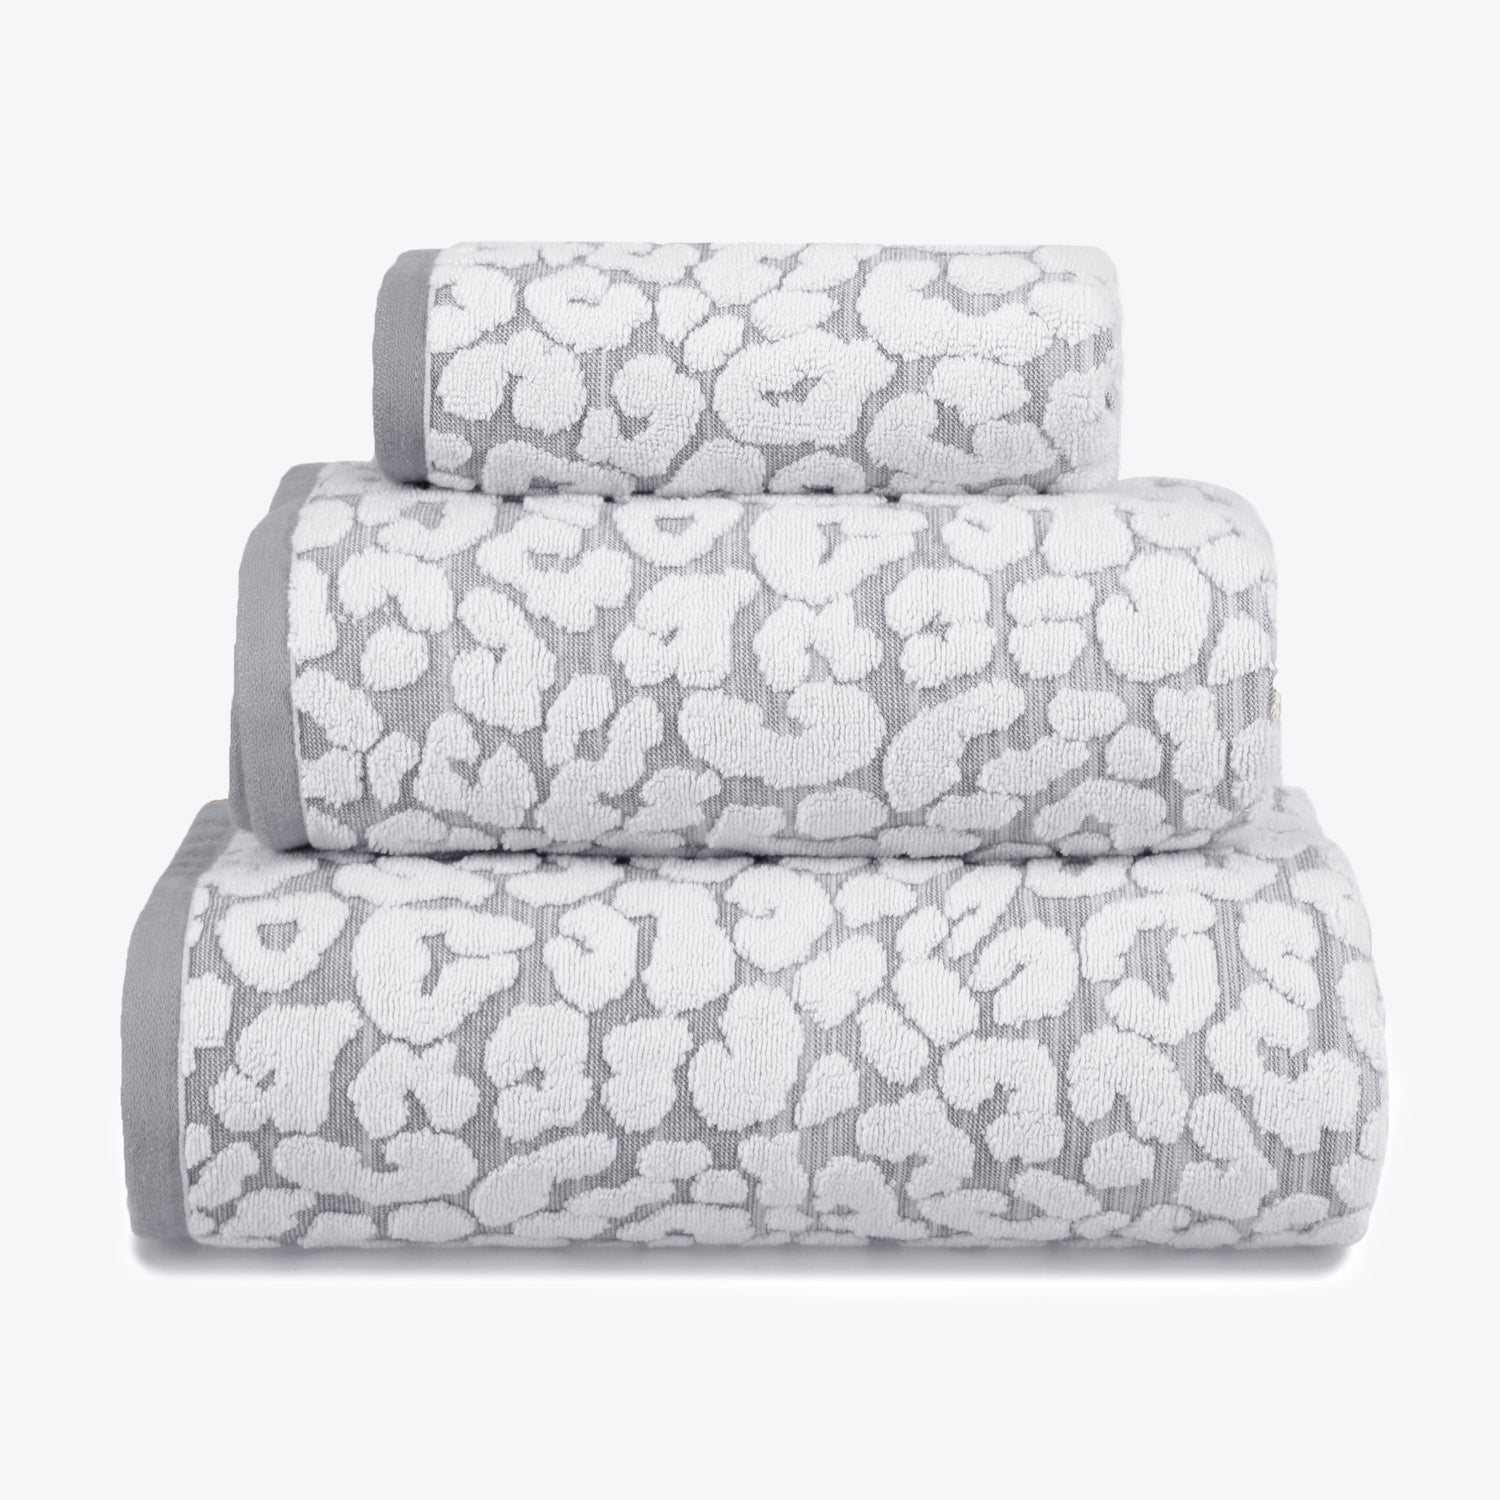 Grey Towel Set - Leopard Print Bathroom towels